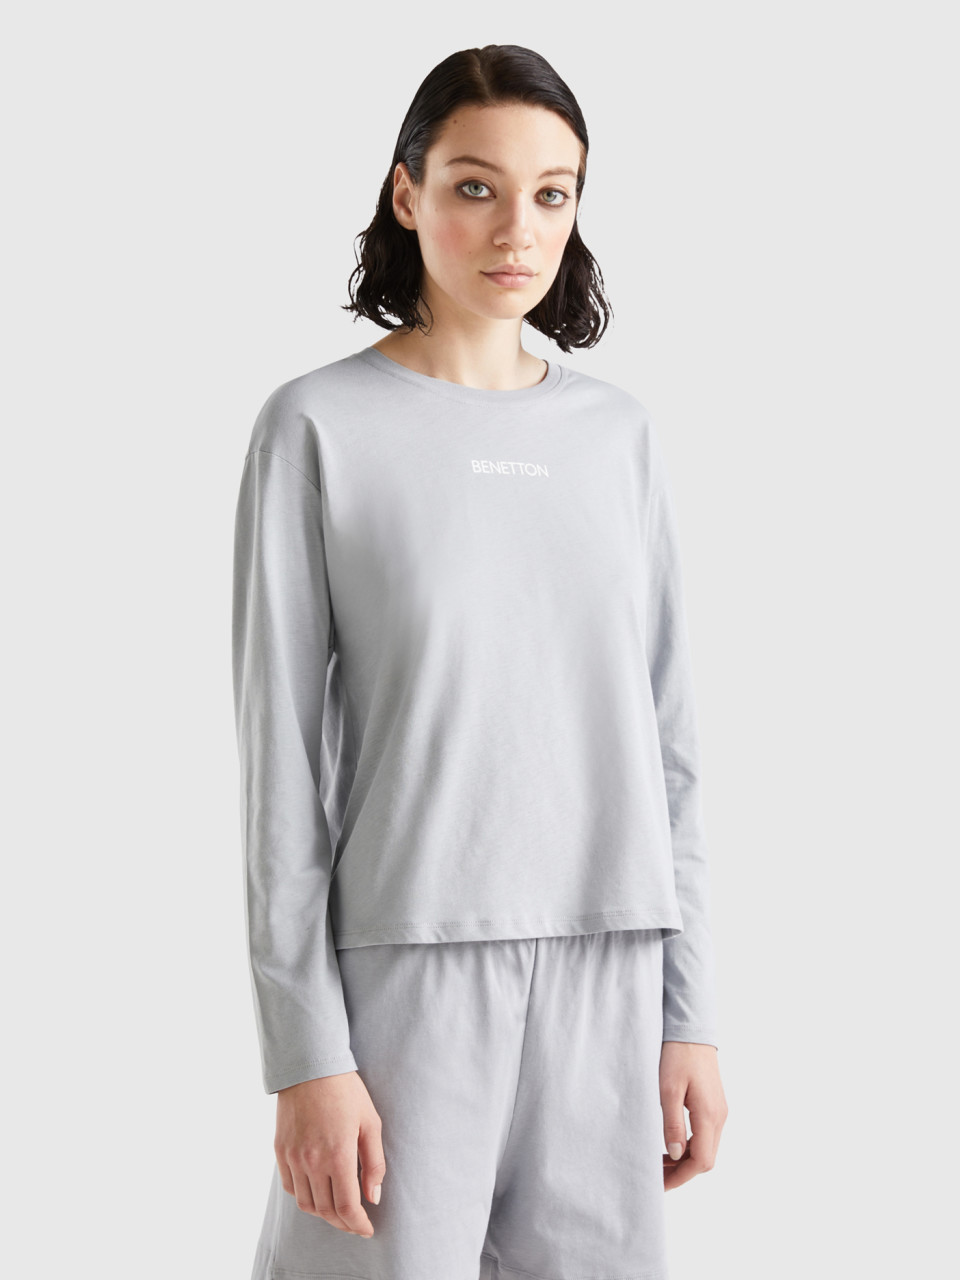 Benetton, T-shirt With Logo Print, Light Gray, Women